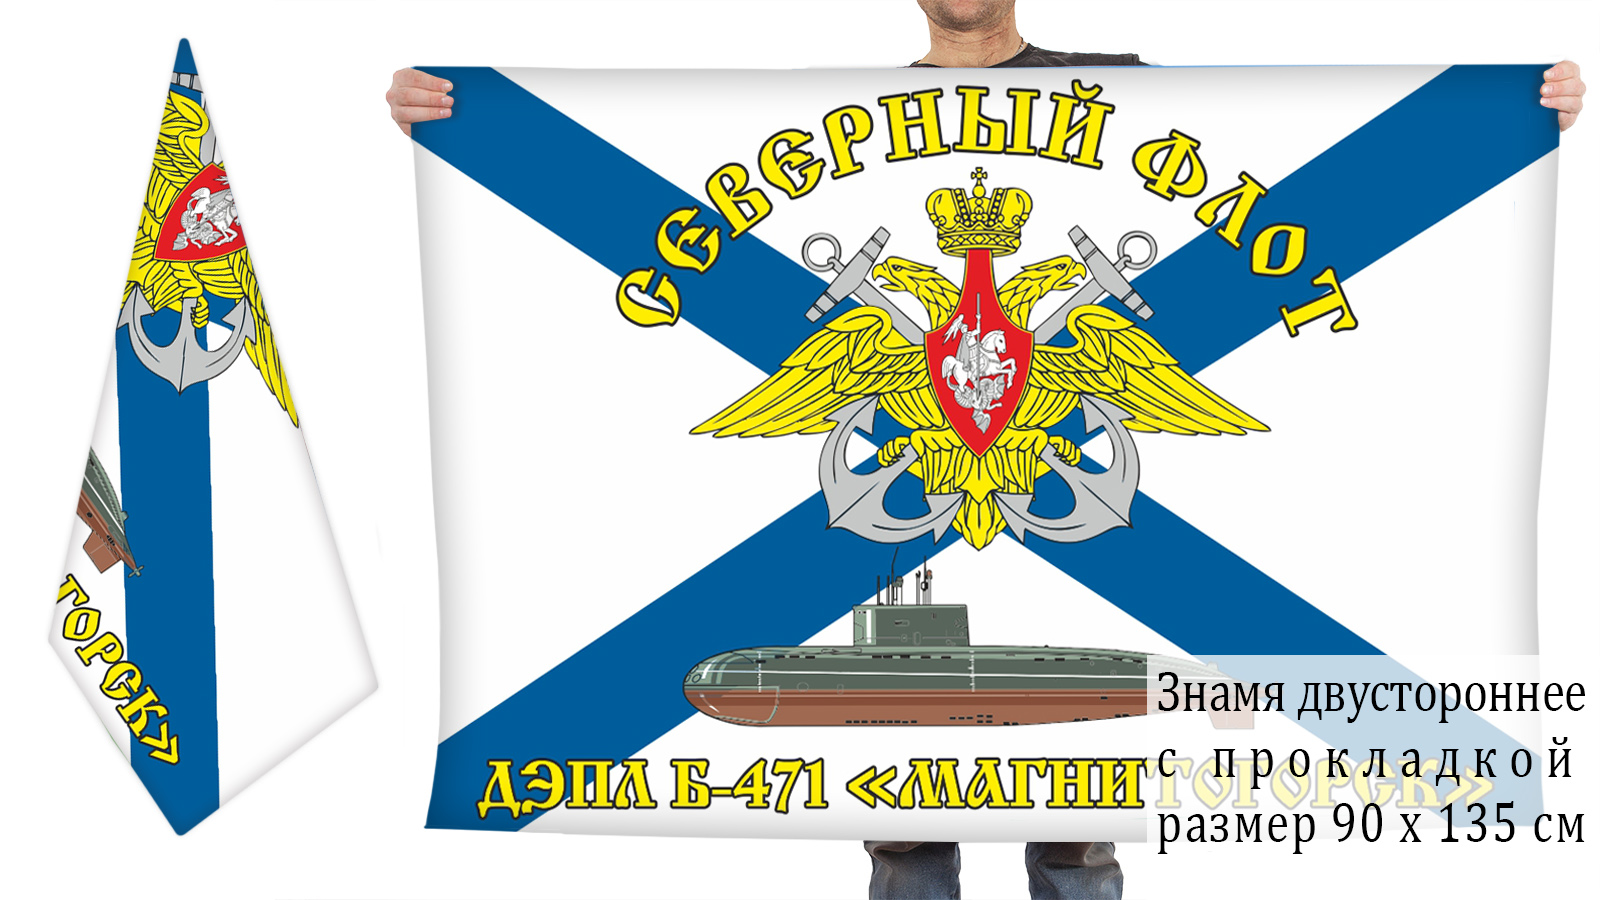 Заказать флаг ВМФ Б-471 Магнитогорск